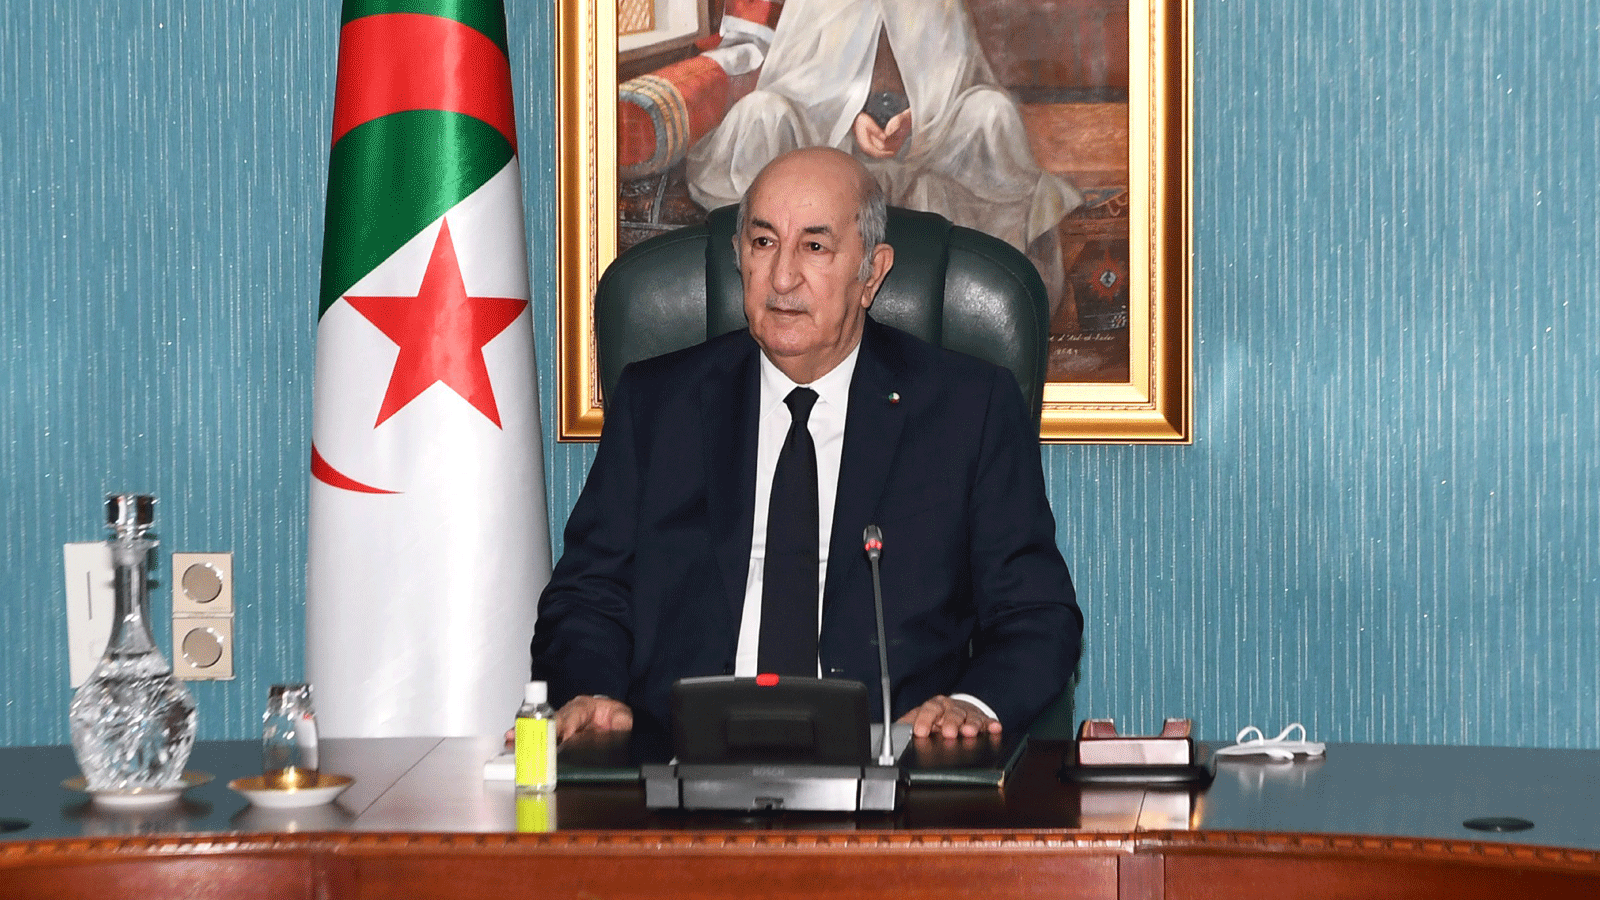  الرئيس الجزائري عبد المجيد تبون، يترأس اجتماعا للمجلس الأعلى للأمن. 7 تشرين الأول/ أكتوبر 2021. (صورة من إعلام رئاسة جمهورية الجزائر)